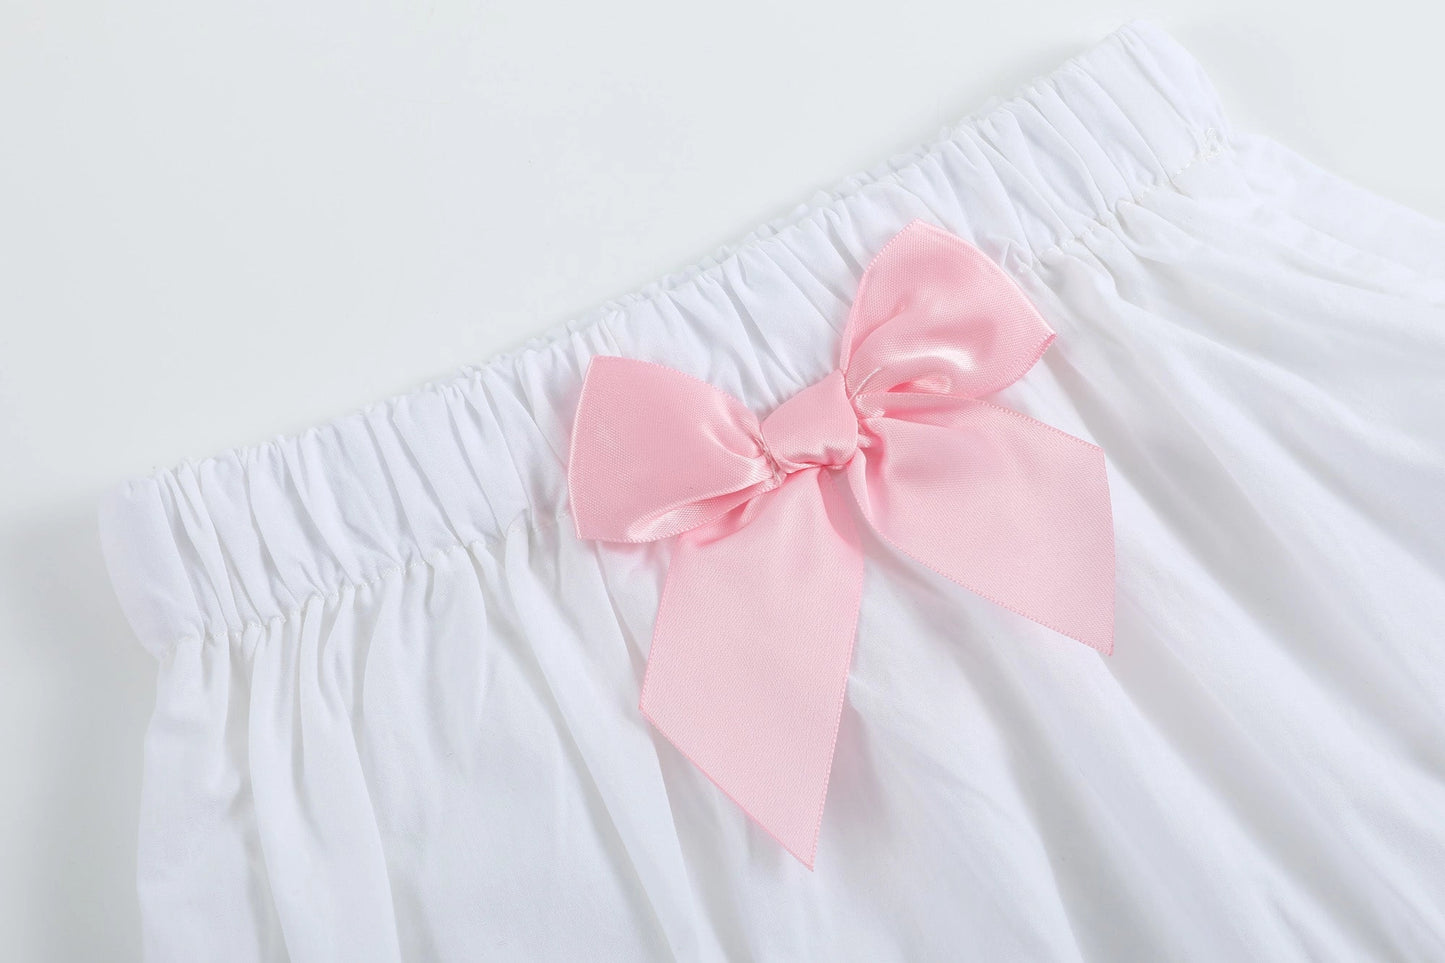 White & Pink Cross Smock Dress/Bloomer Set